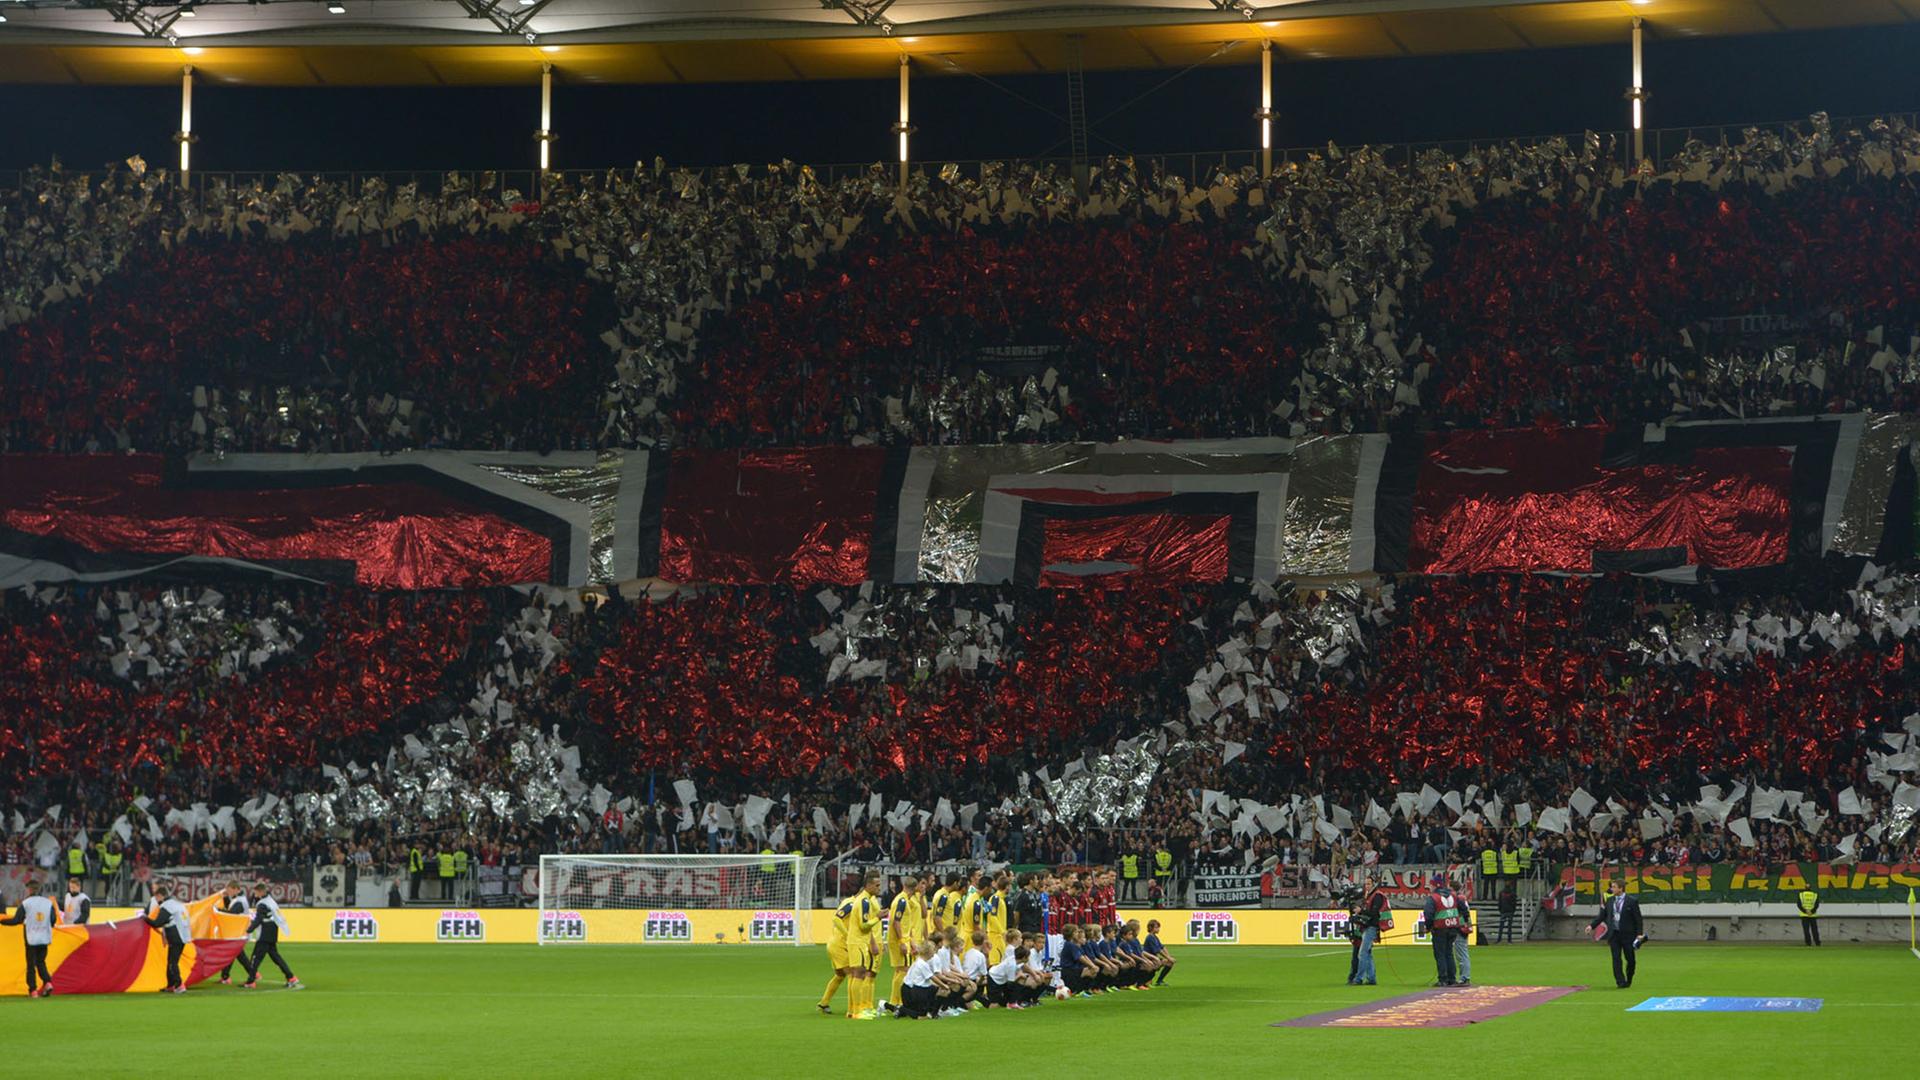 Eintracht Frankfurt gegen Maccabi Tel Aviv am 24.10.2013 im Frankfurt-Stadion in Frankfurt am Main. Die Frankfurt-Fans führen vor dem Anpfiff eine Choreographie auf.